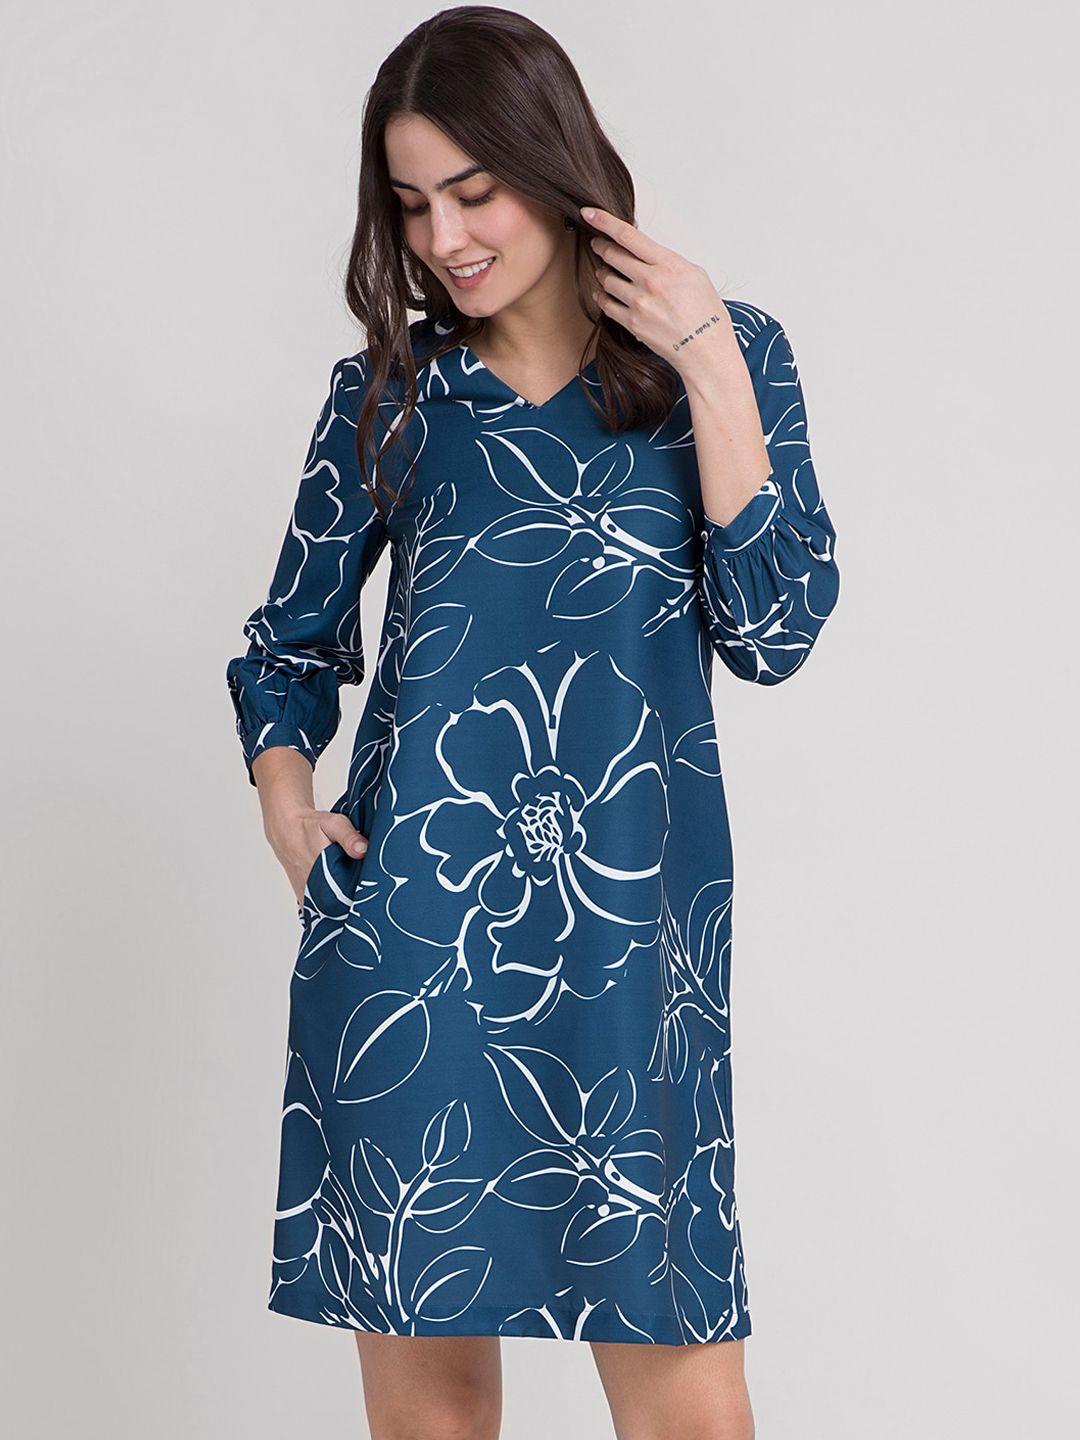 fablestreet teal blue & white v-neck floral shift dress